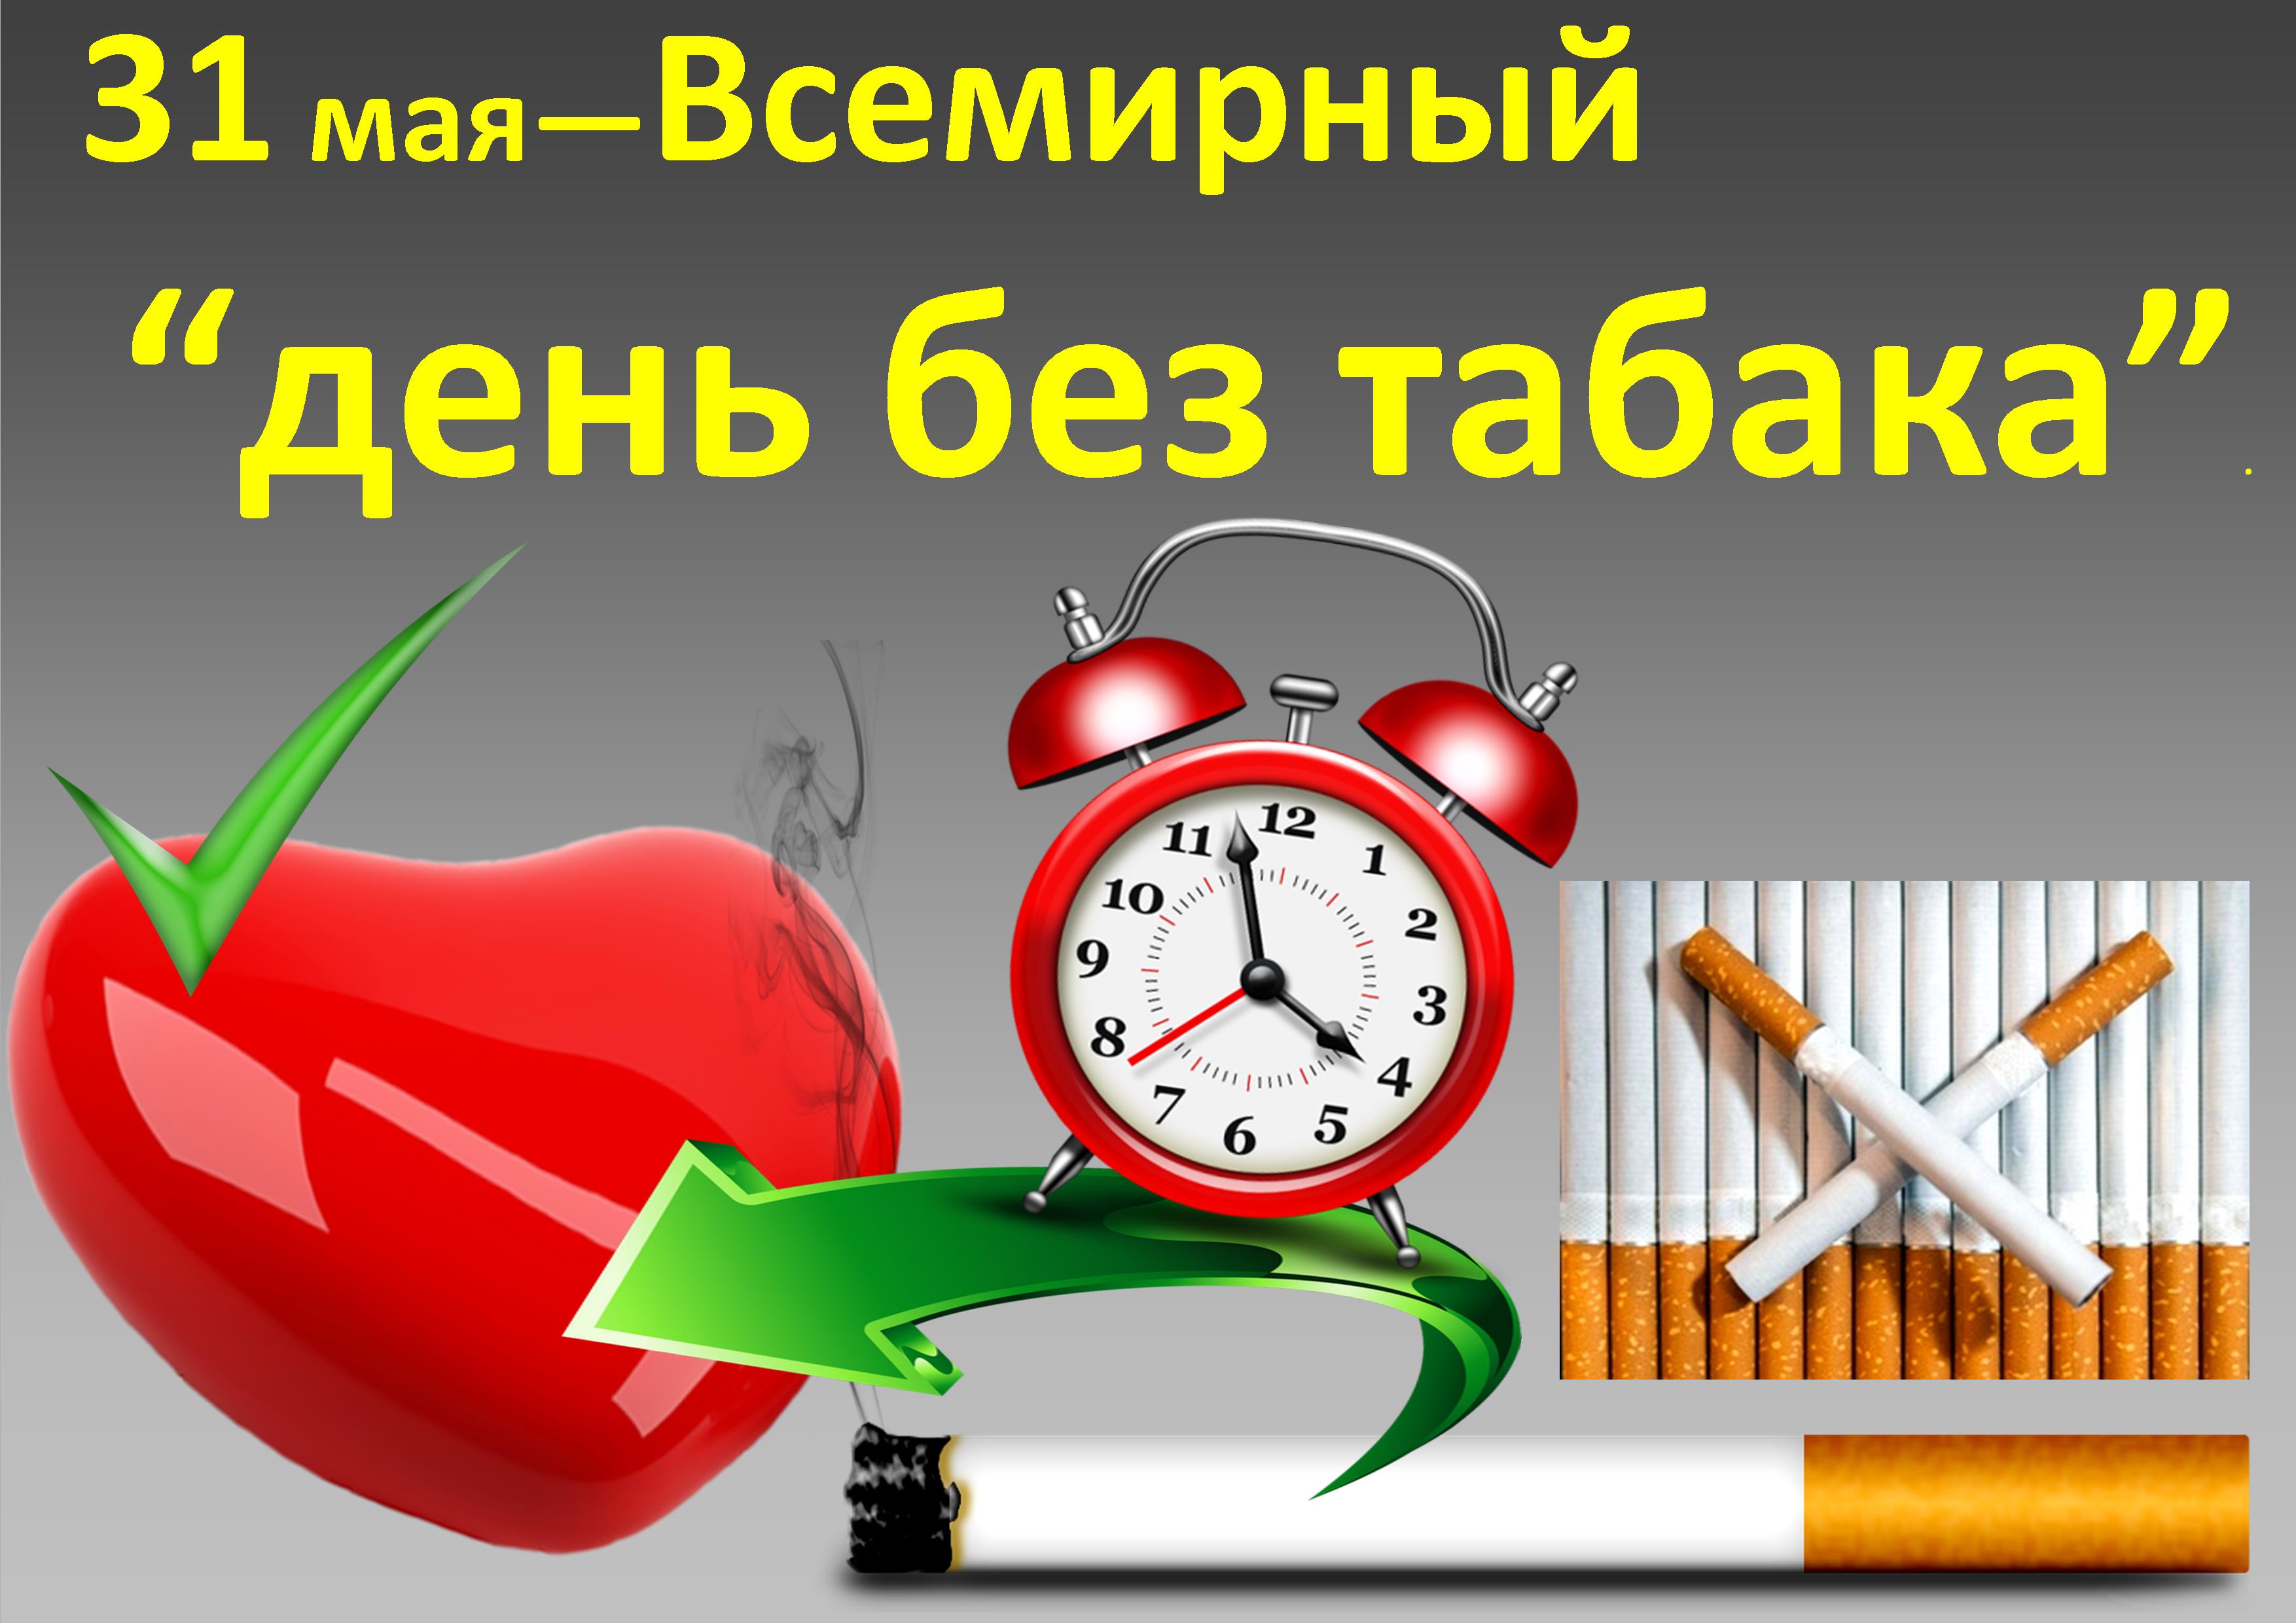 Картинка с днем без. Всемирный день без табака. Всемирный день без Таба. 31 Мая день без табака. Всемирный дкньбезтаюака.